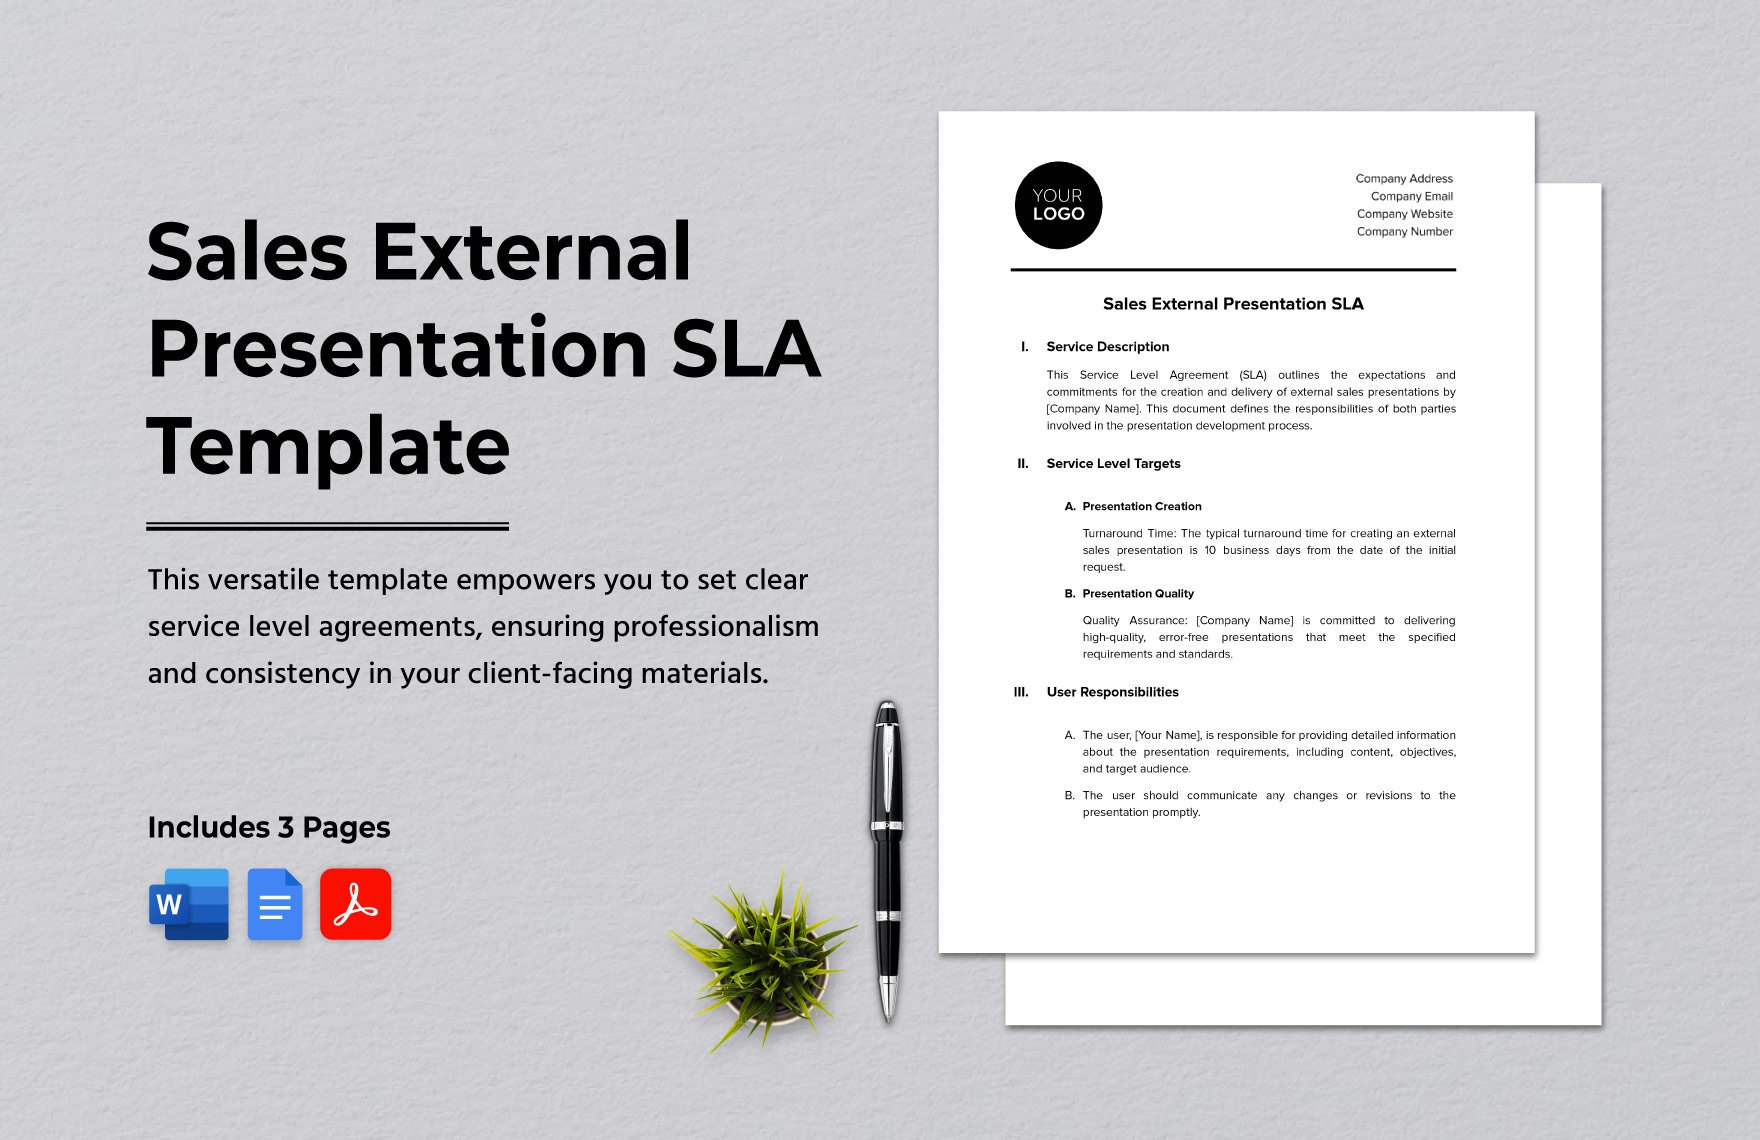 Sales External Presentation SLA Template